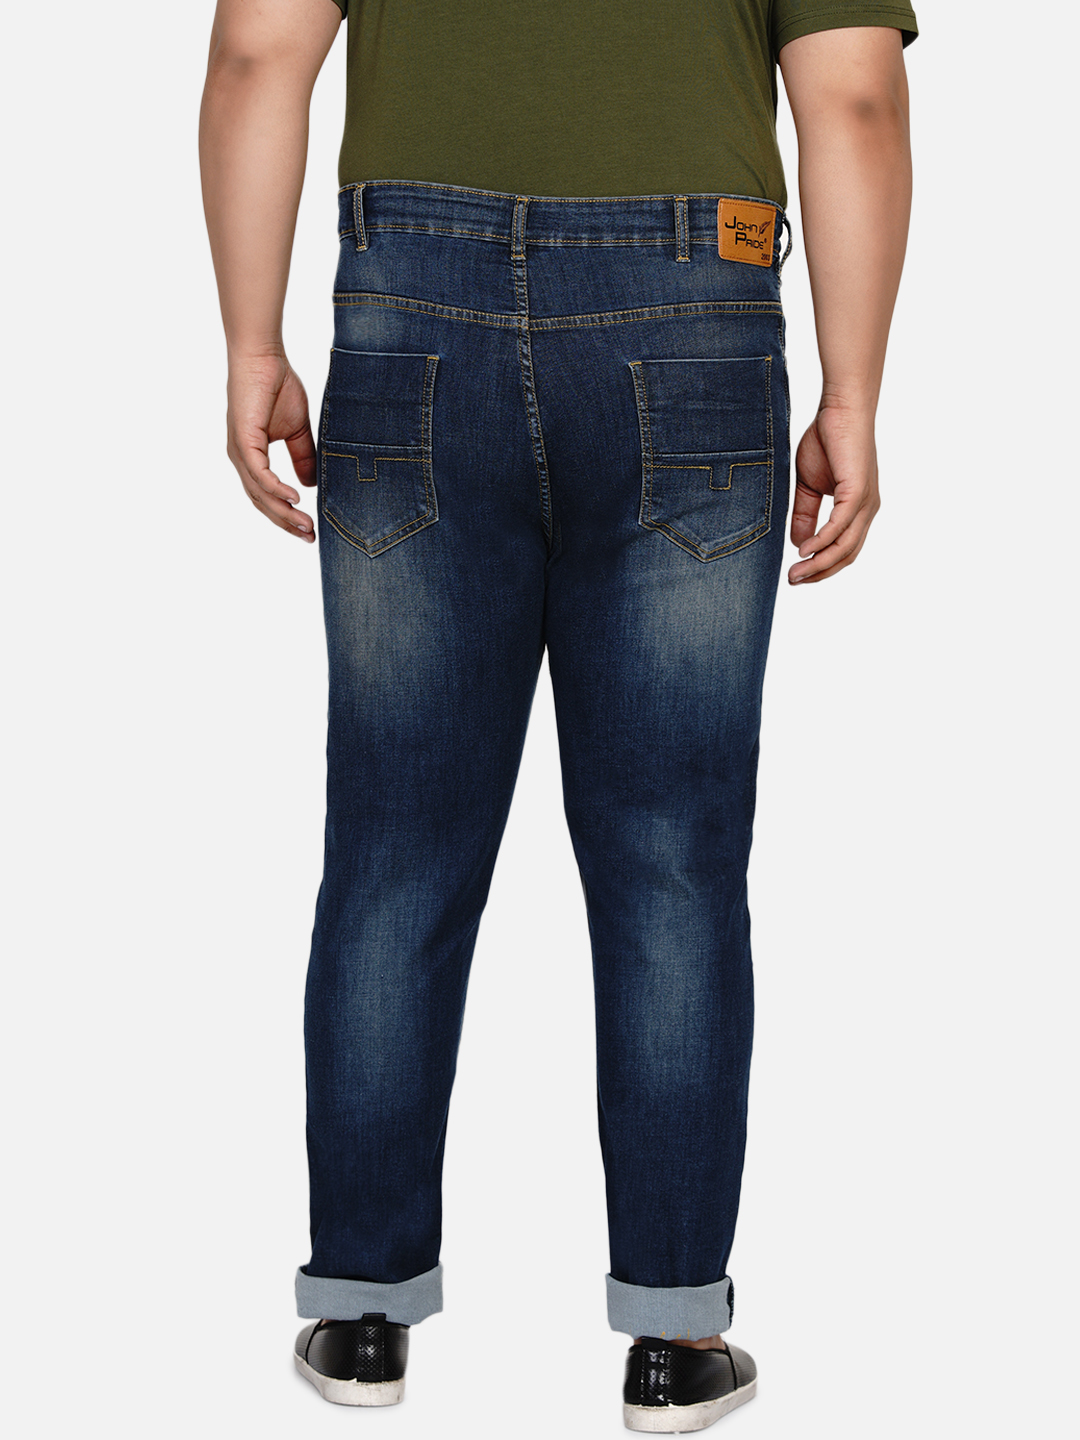 affordables/jeans/EJPJ2028/ejpj2028-5.jpg